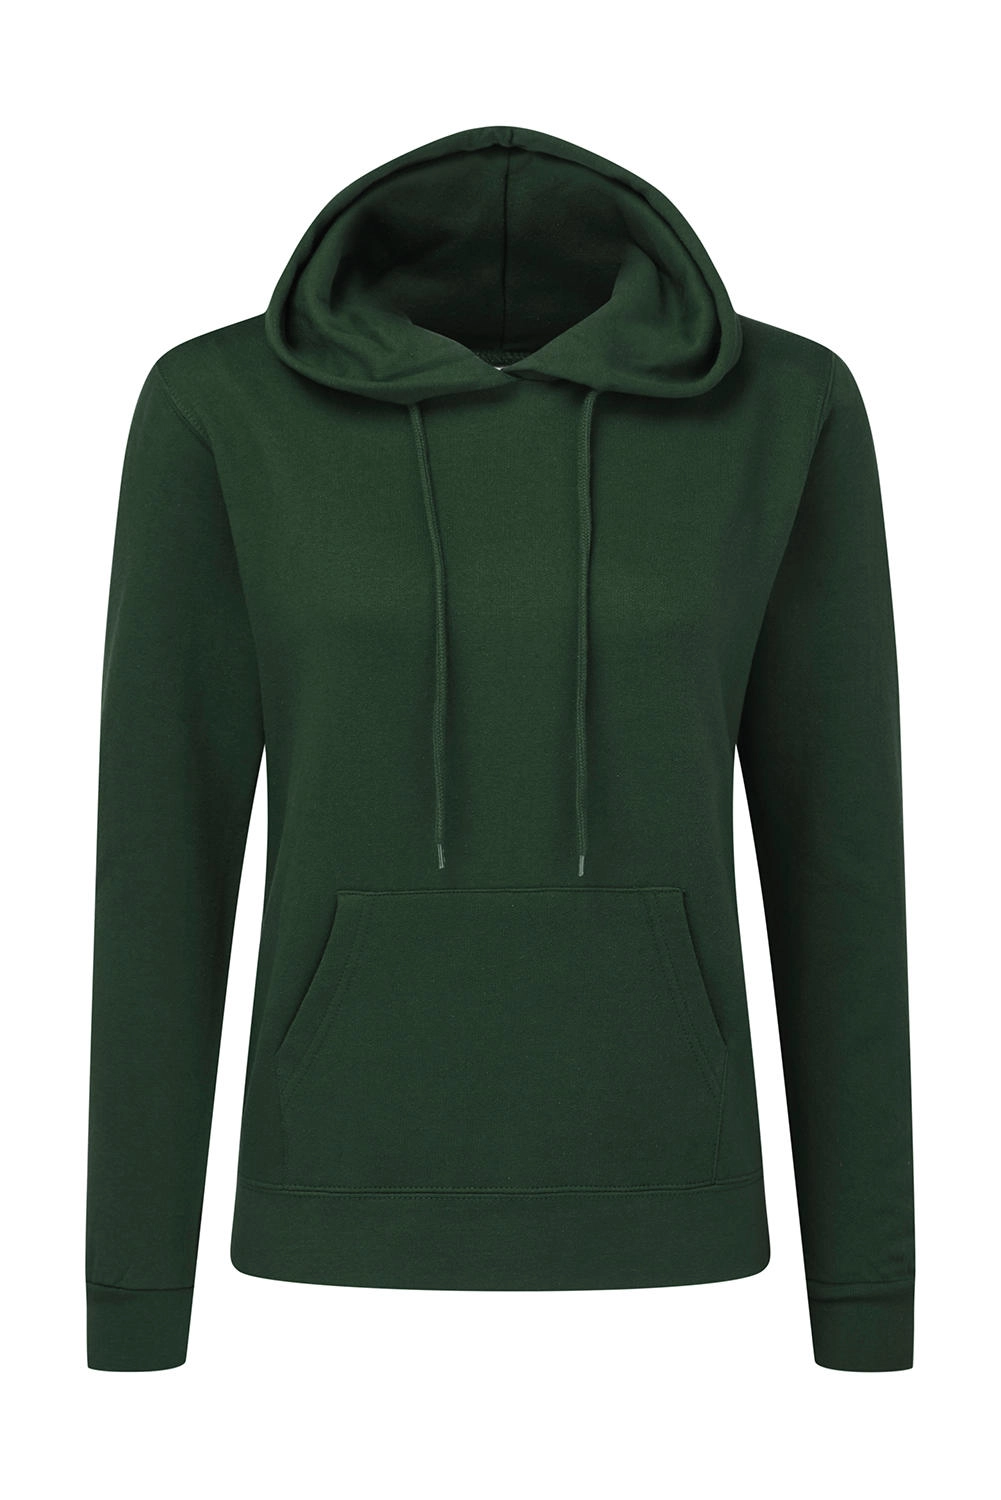 Hooded Sweatshirt Women zum Besticken und Bedrucken in der Farbe Bottle Green mit Ihren Logo, Schriftzug oder Motiv.